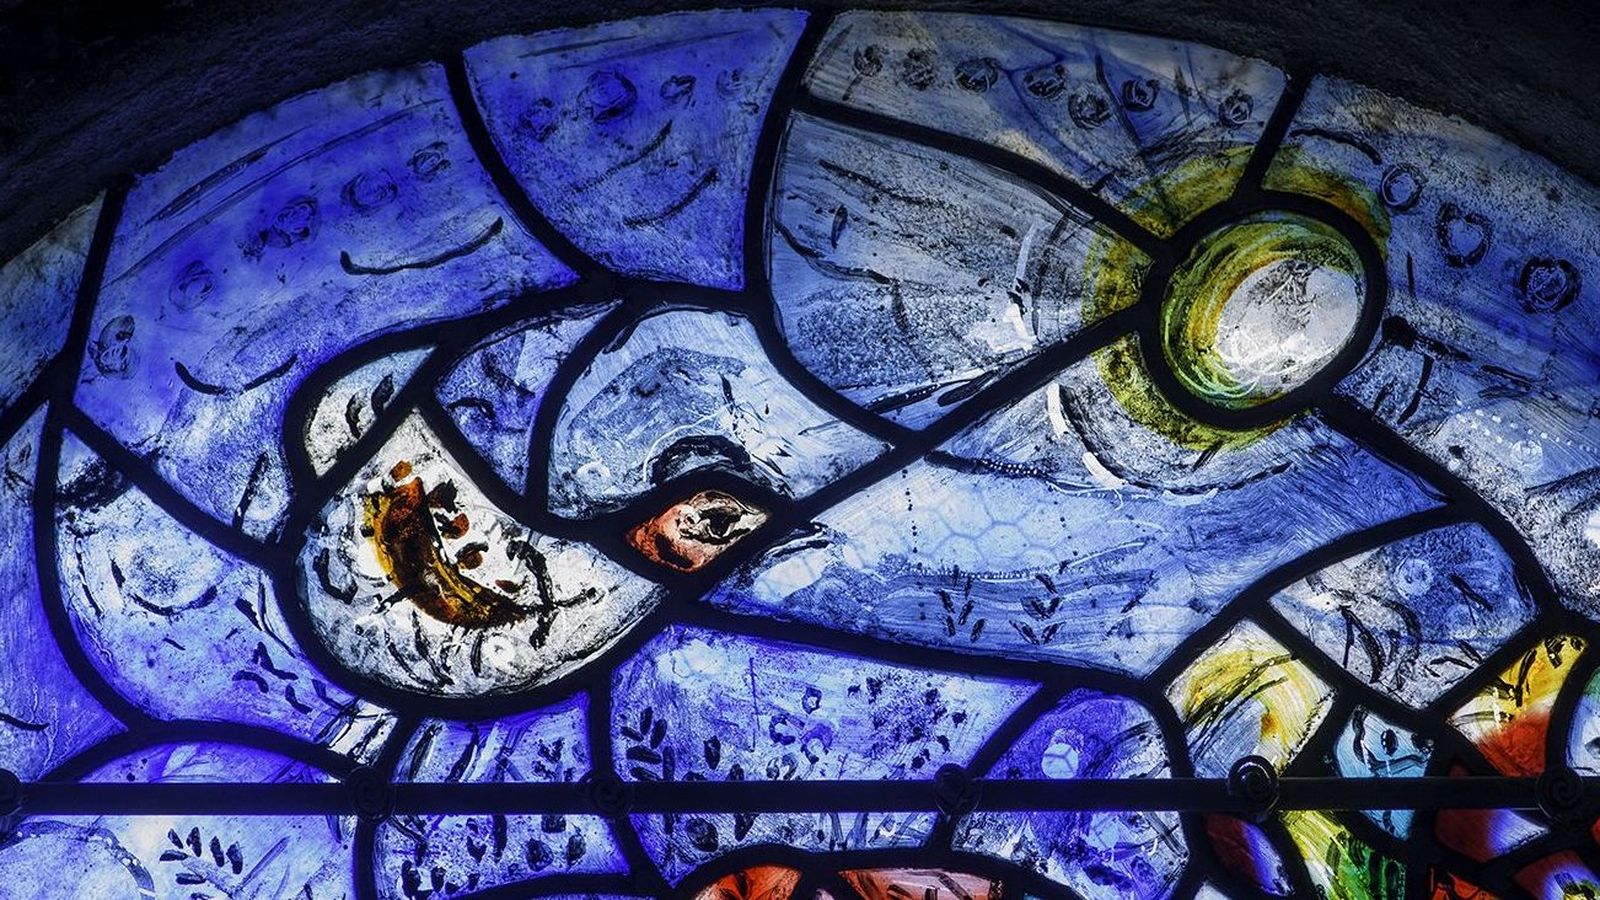 Vitrail de Marc Chagall © Région Nouvelle-Aquitaine, Inventaire Général du patrimoine culturel, J. Chalard-Deschamps